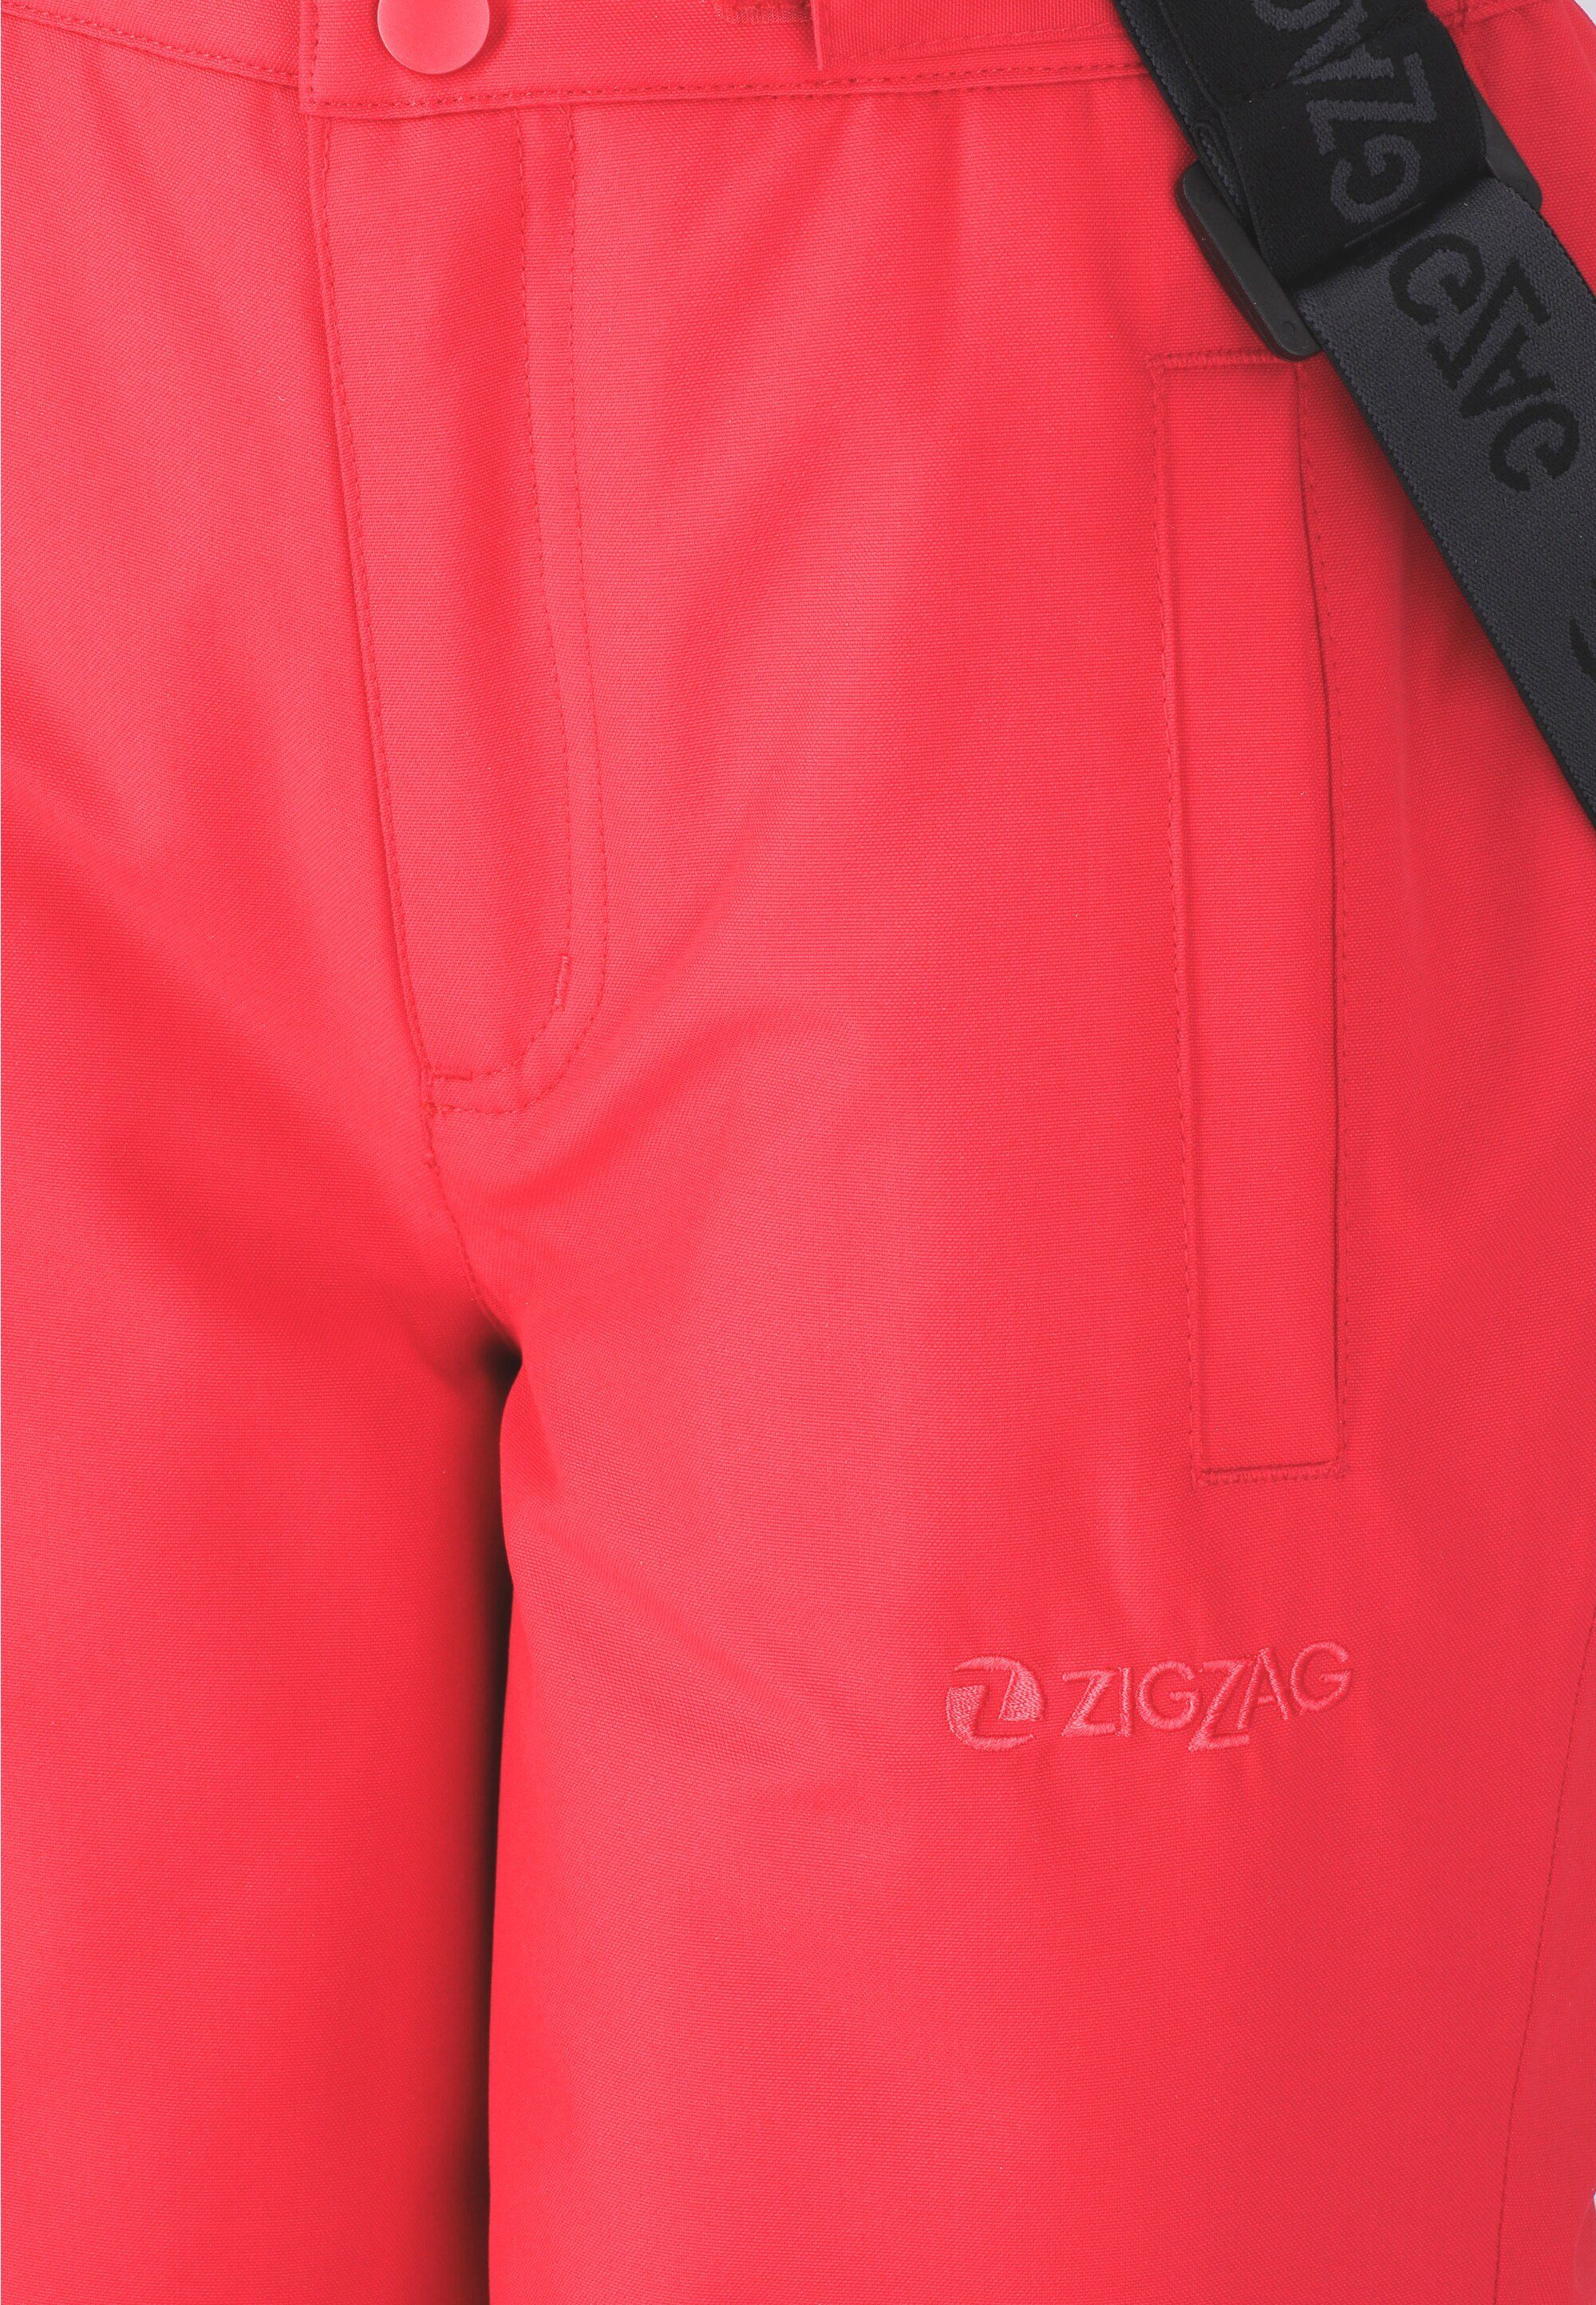 Skihose ZIGZAG mit Soho abnehmbaren pink-schwarz Hosenträgern